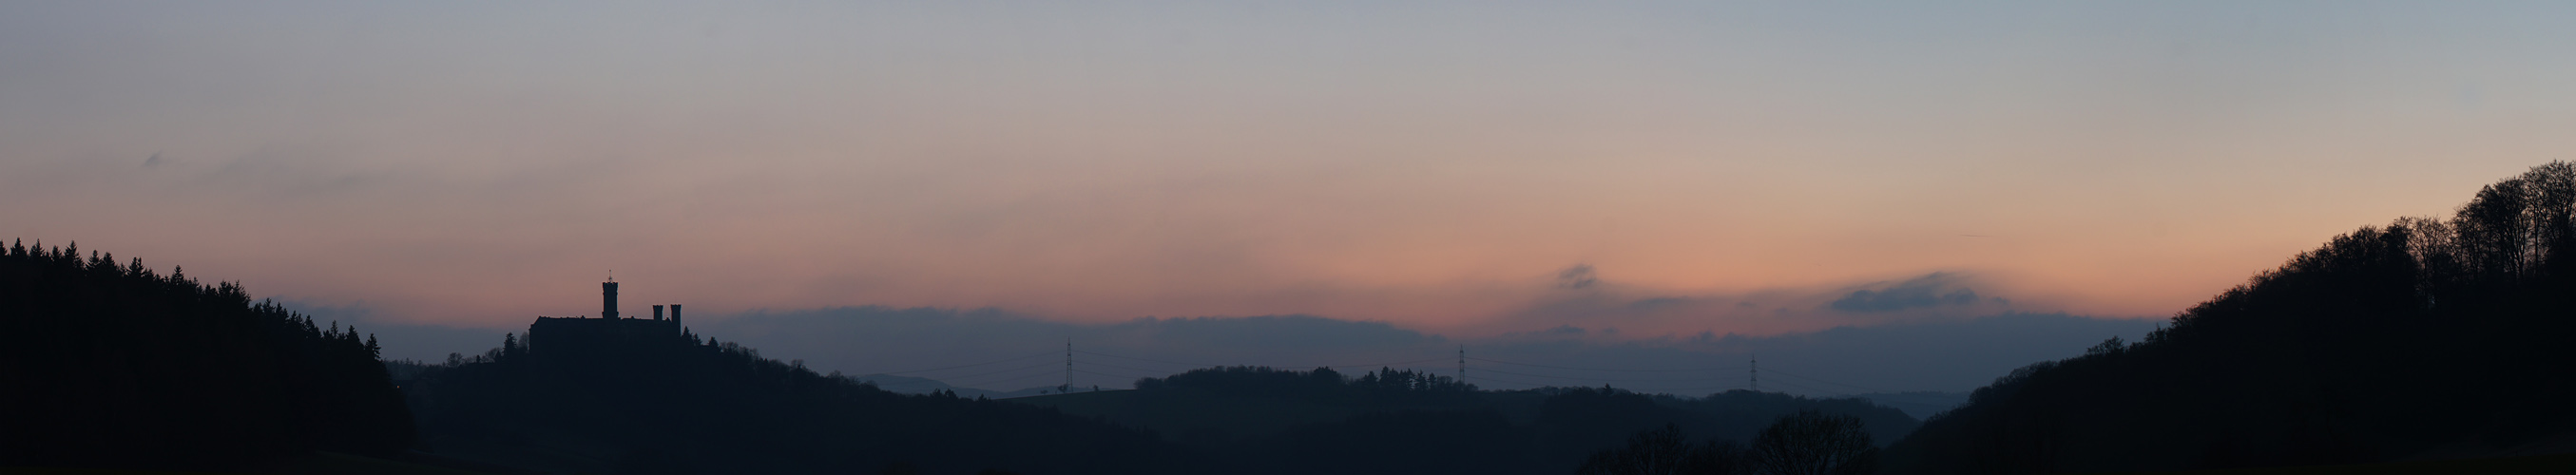 Sonnenuntergang in Balduinstein